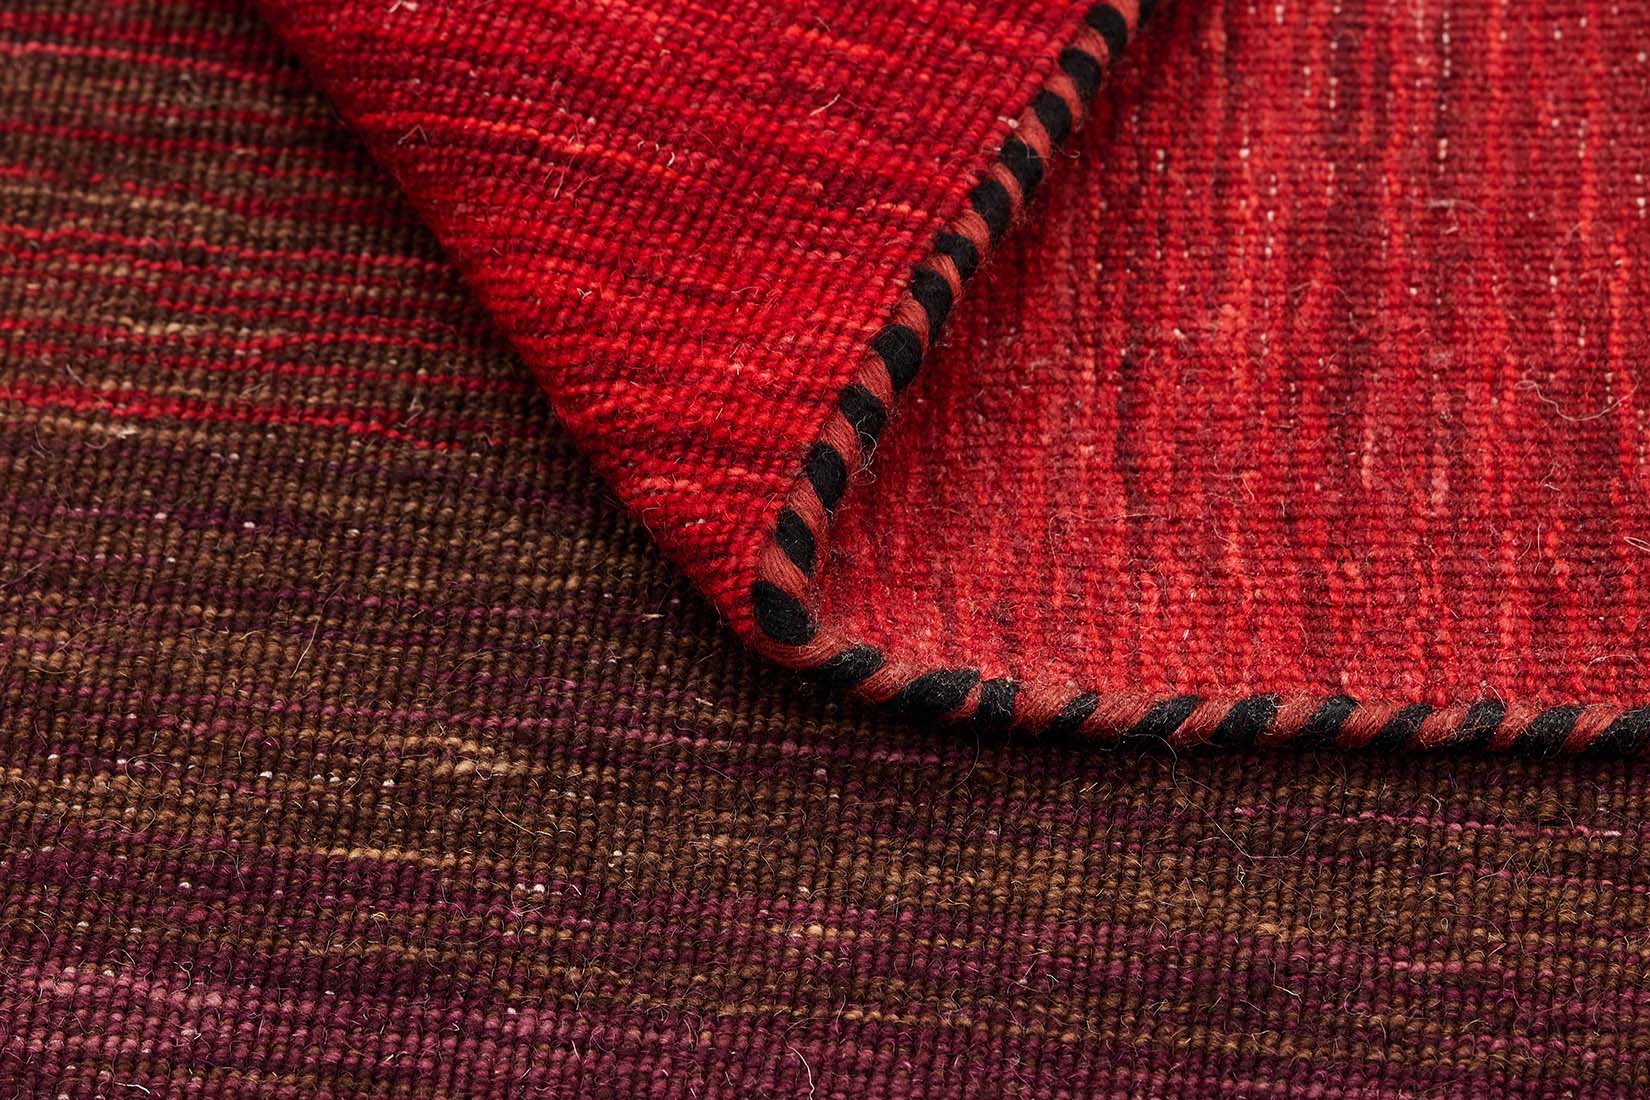 red and black ombre flatweave kelim rug
